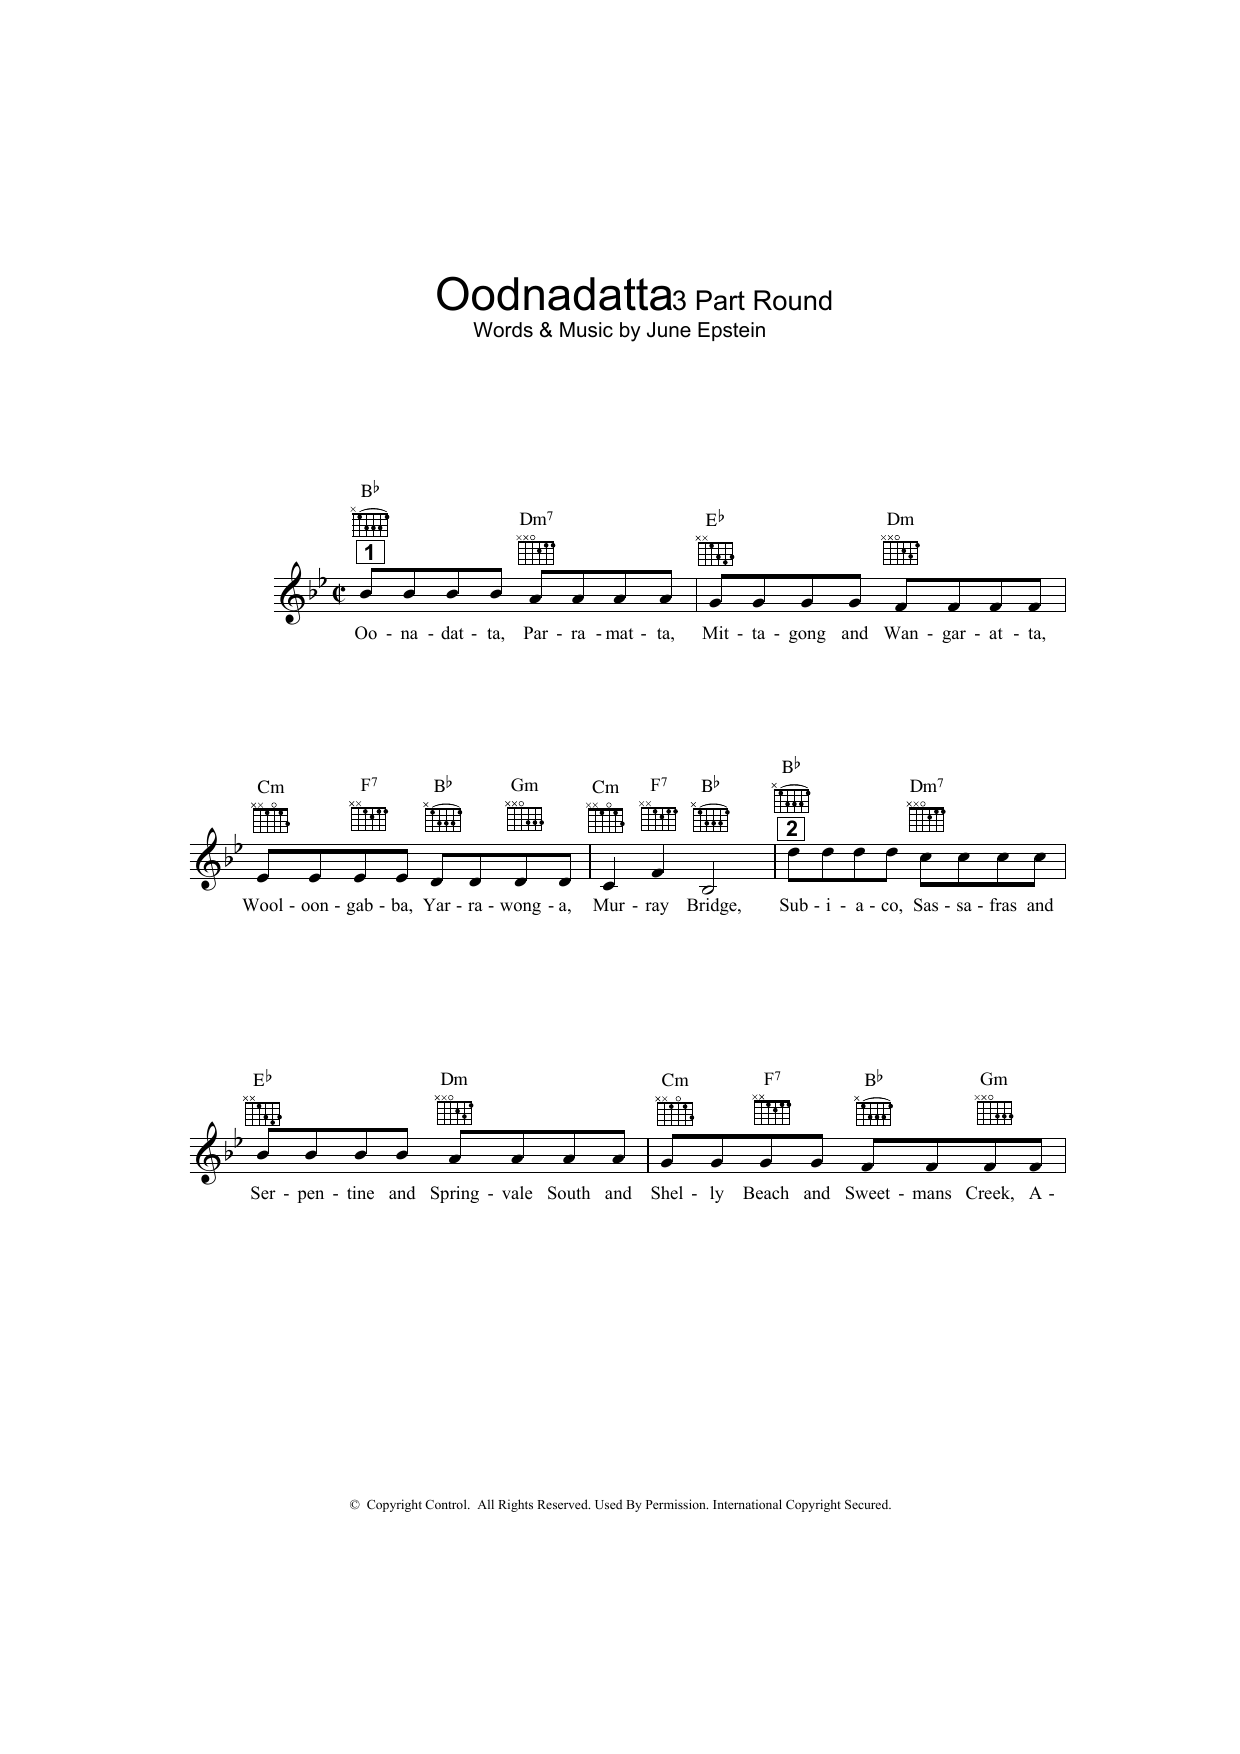 Download June Epstein Oodnadatta Sheet Music